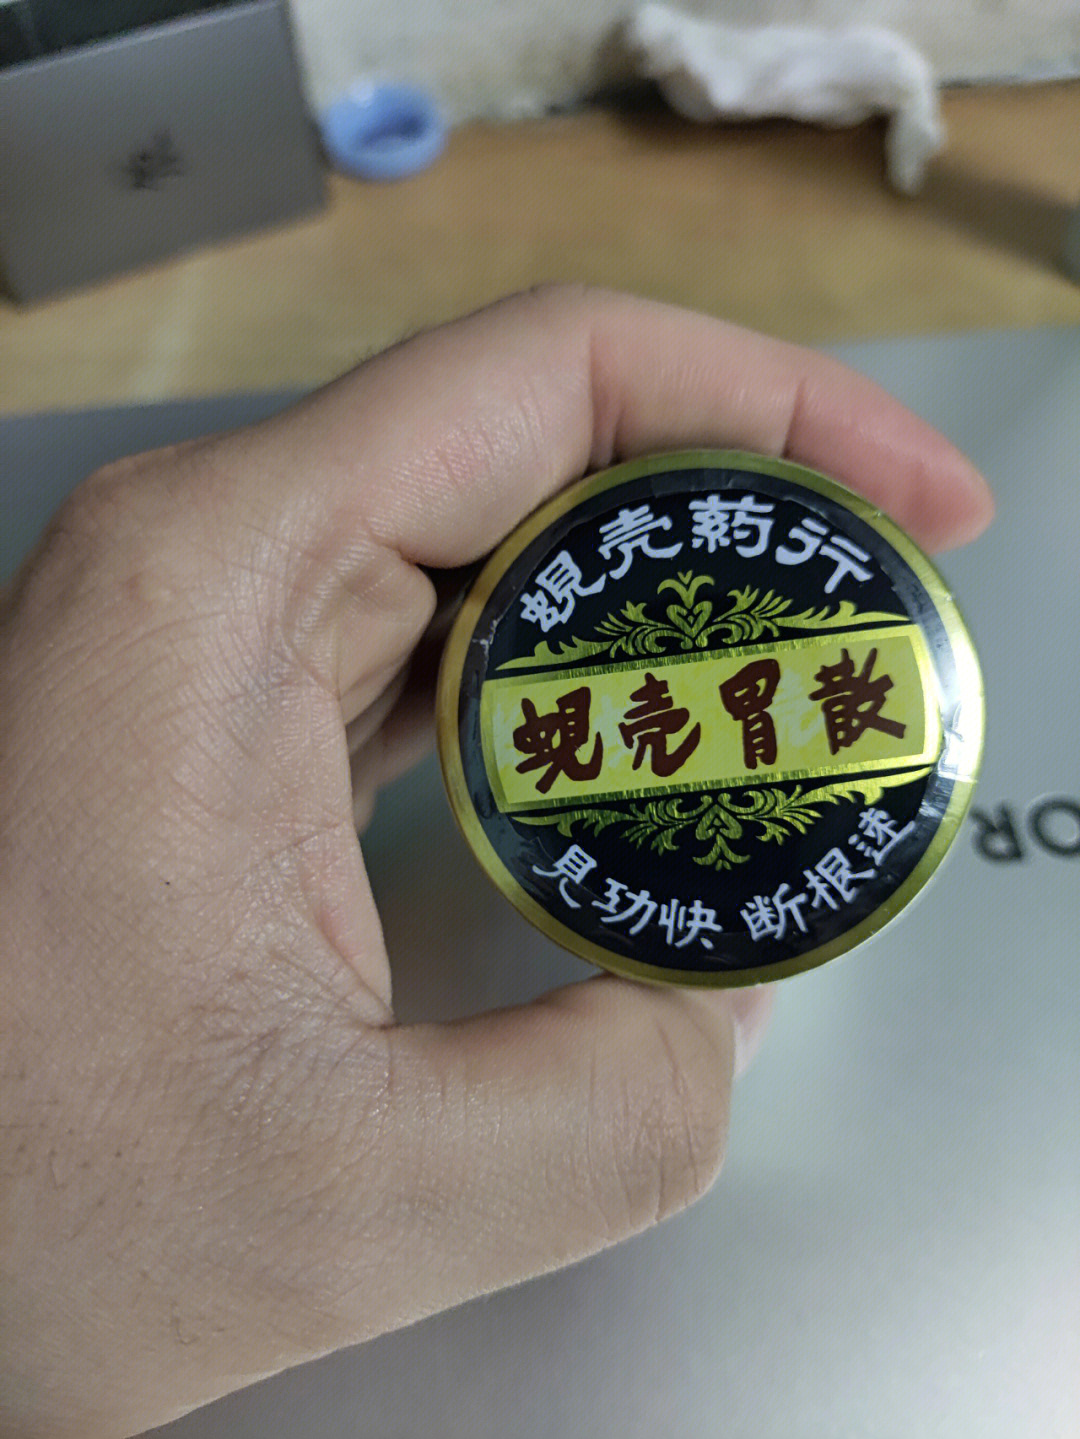 香港胃药蚬壳胃散功效图片